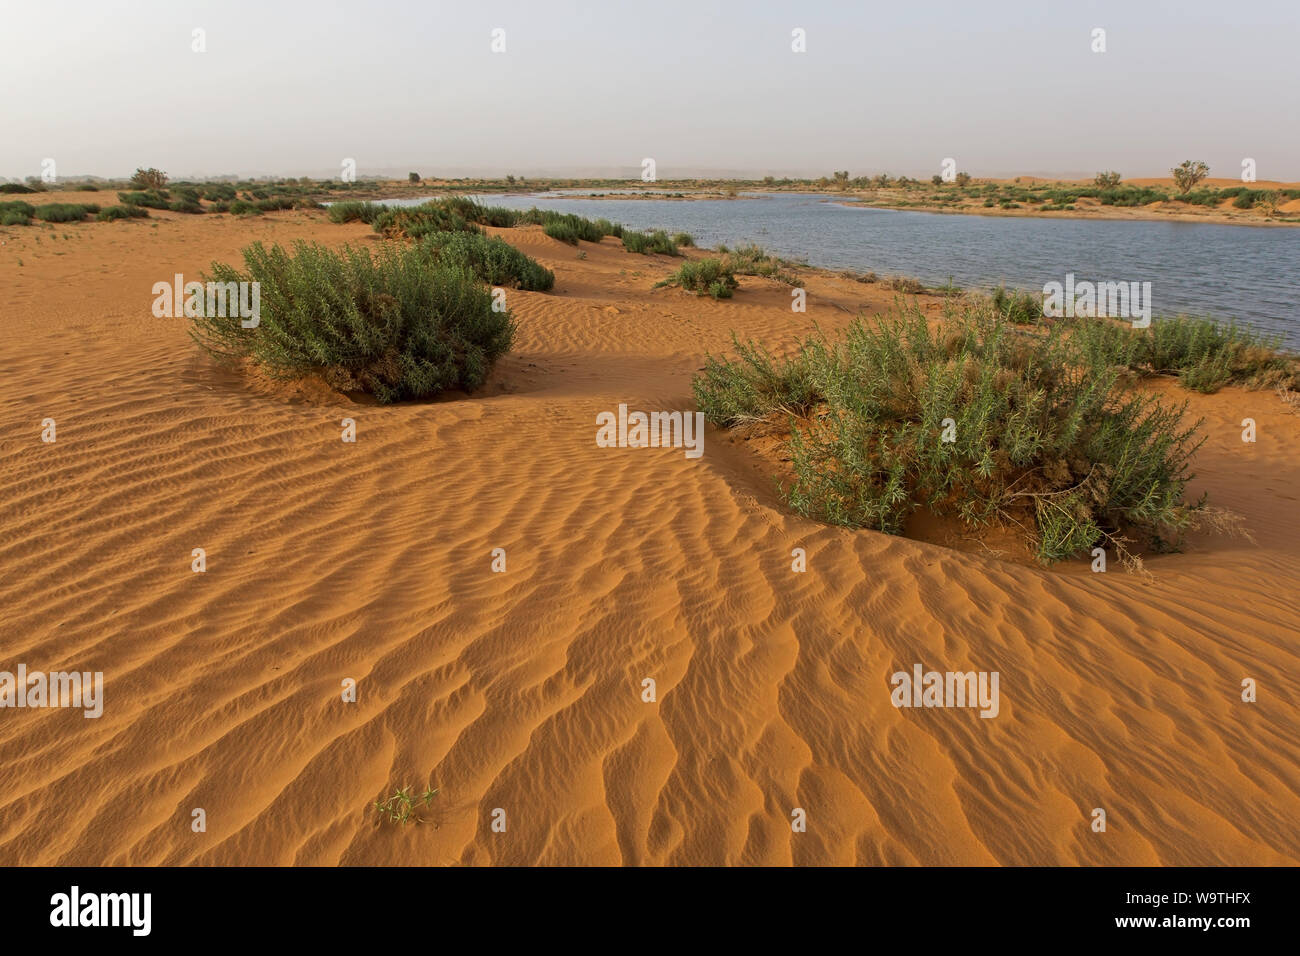 Lush desert landscape after the rain, Riyadh, Saudi Arabia Stock Photo